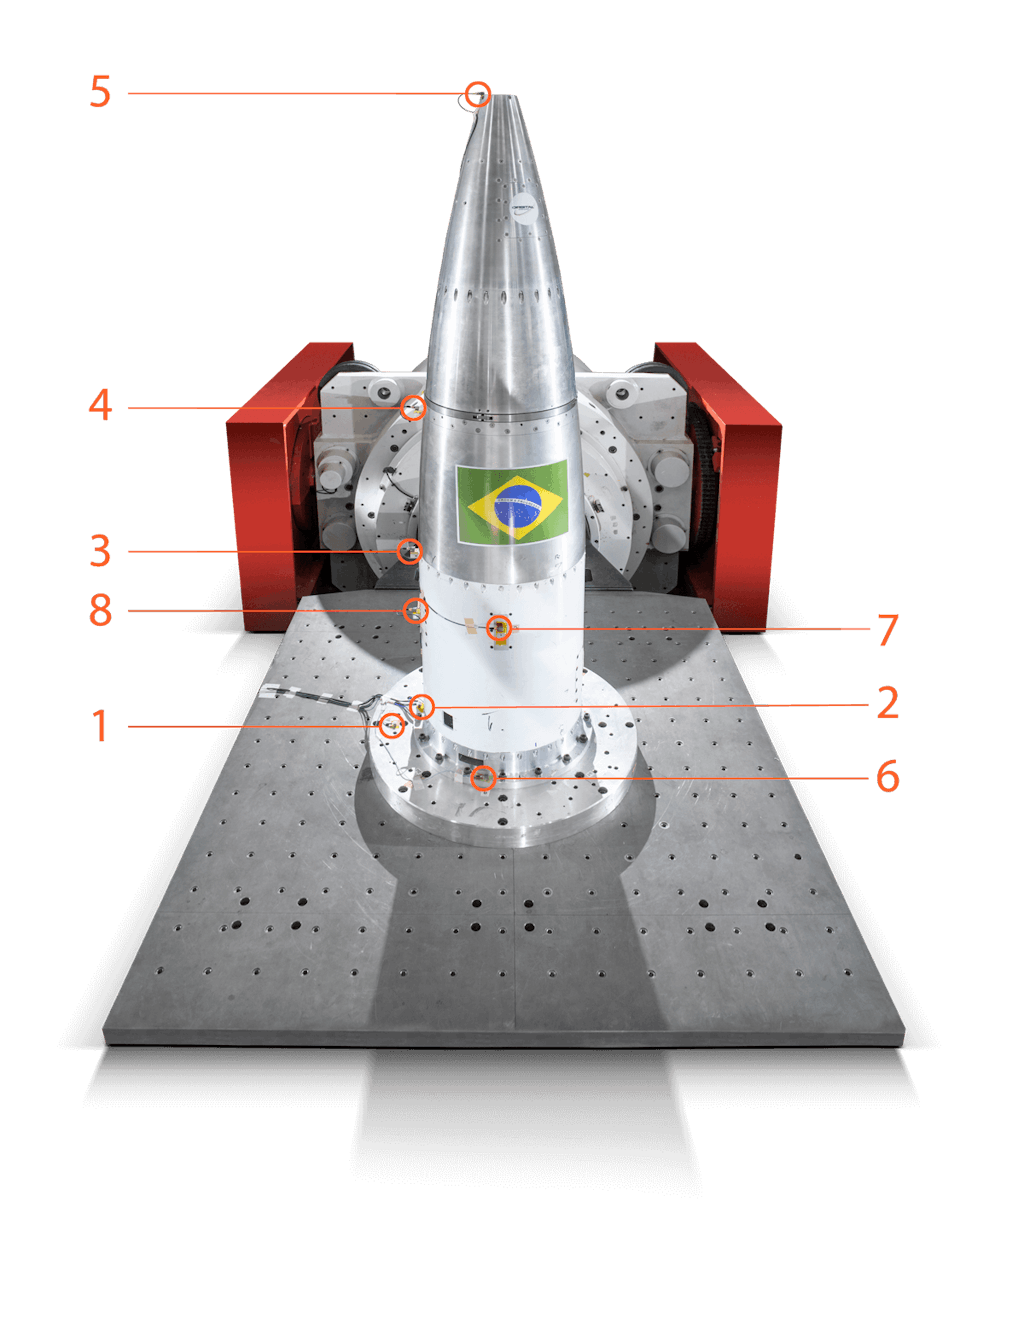 El banco de pruebas: el posicionamiento de los acelerómetros: 7 en la punta del cohete bajo prueba y 1 uno en la placa adaptadora unida a la cama del shaker